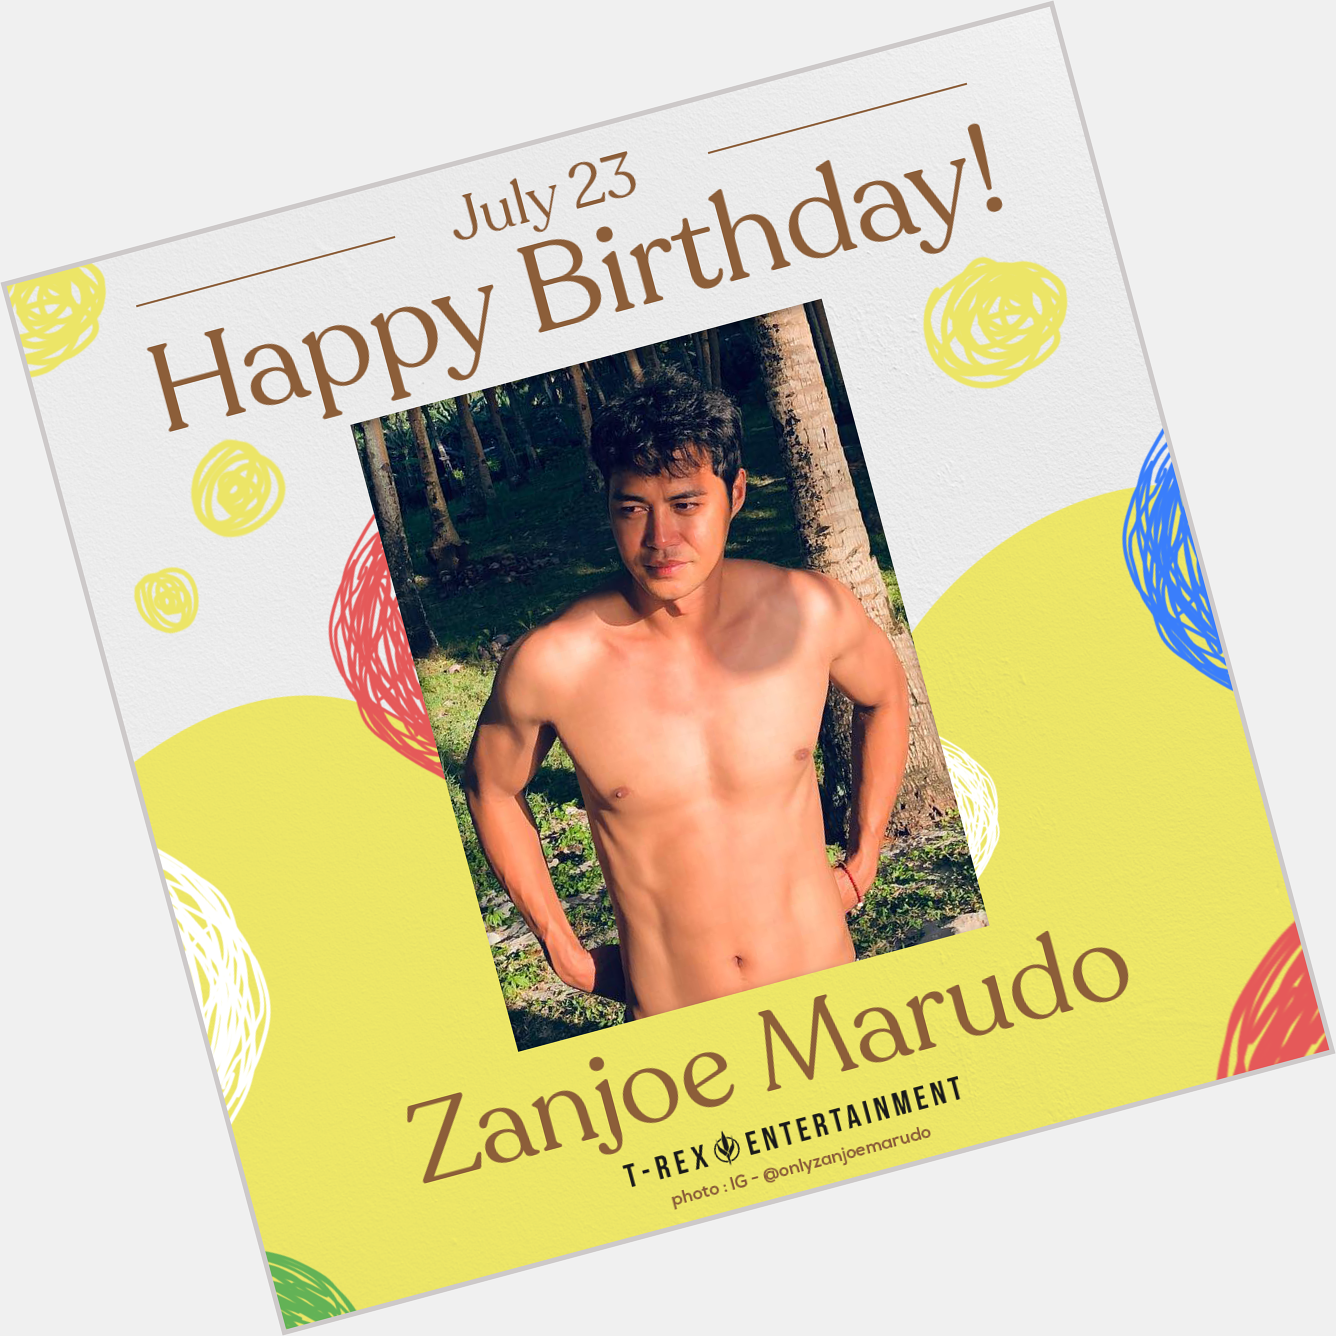 Today, July 23, is Zanjoe Marudo\s 38th birthday!

Happy birthday, Zanjoe!  